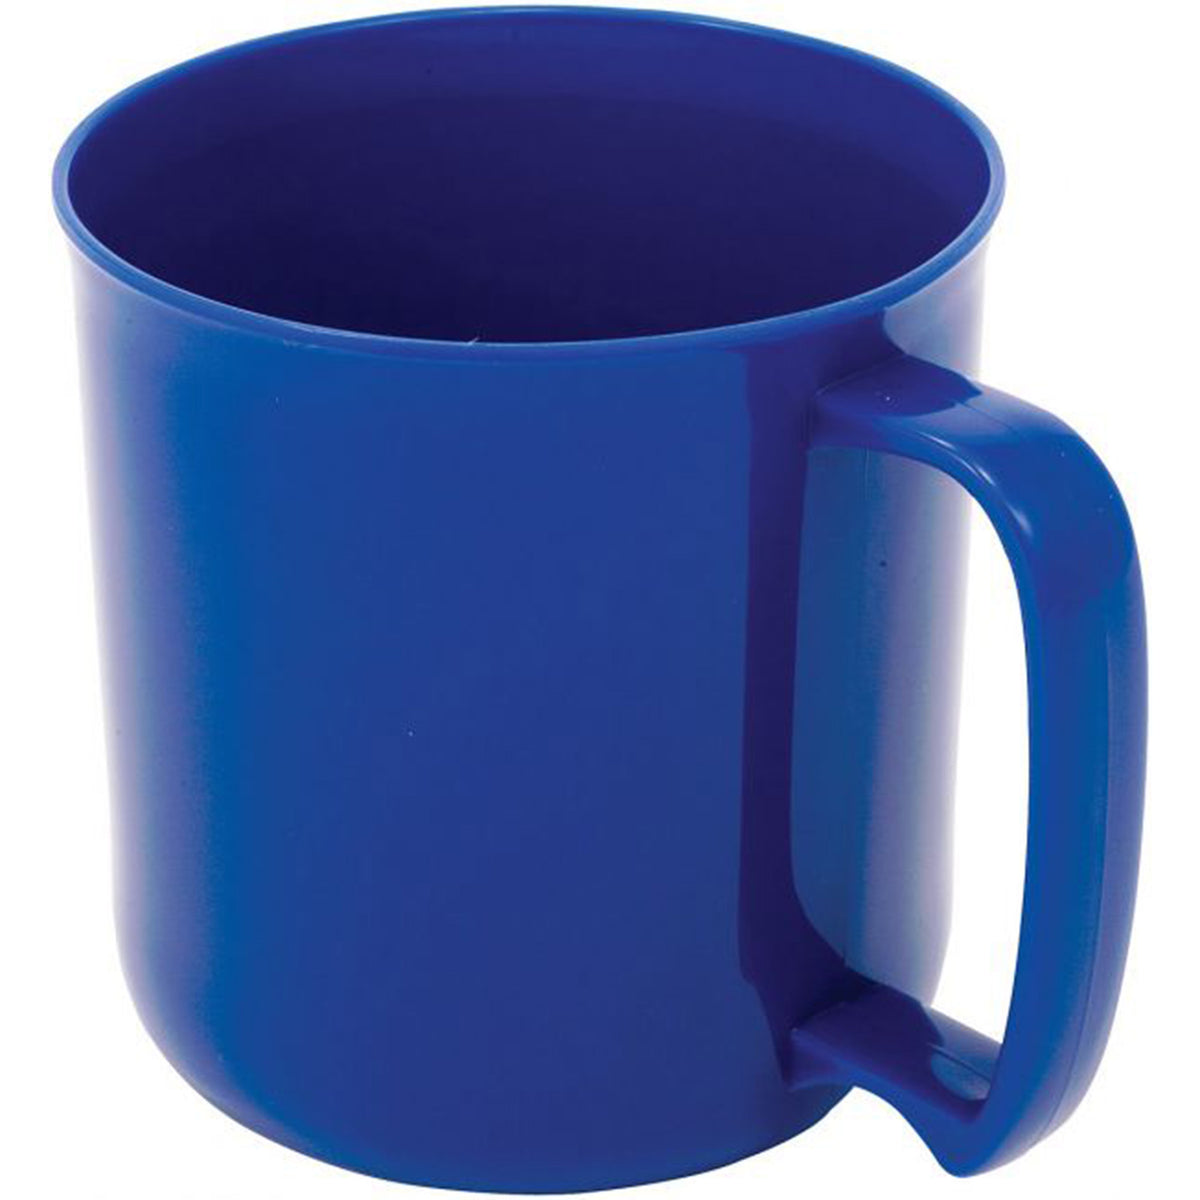 a blue mug